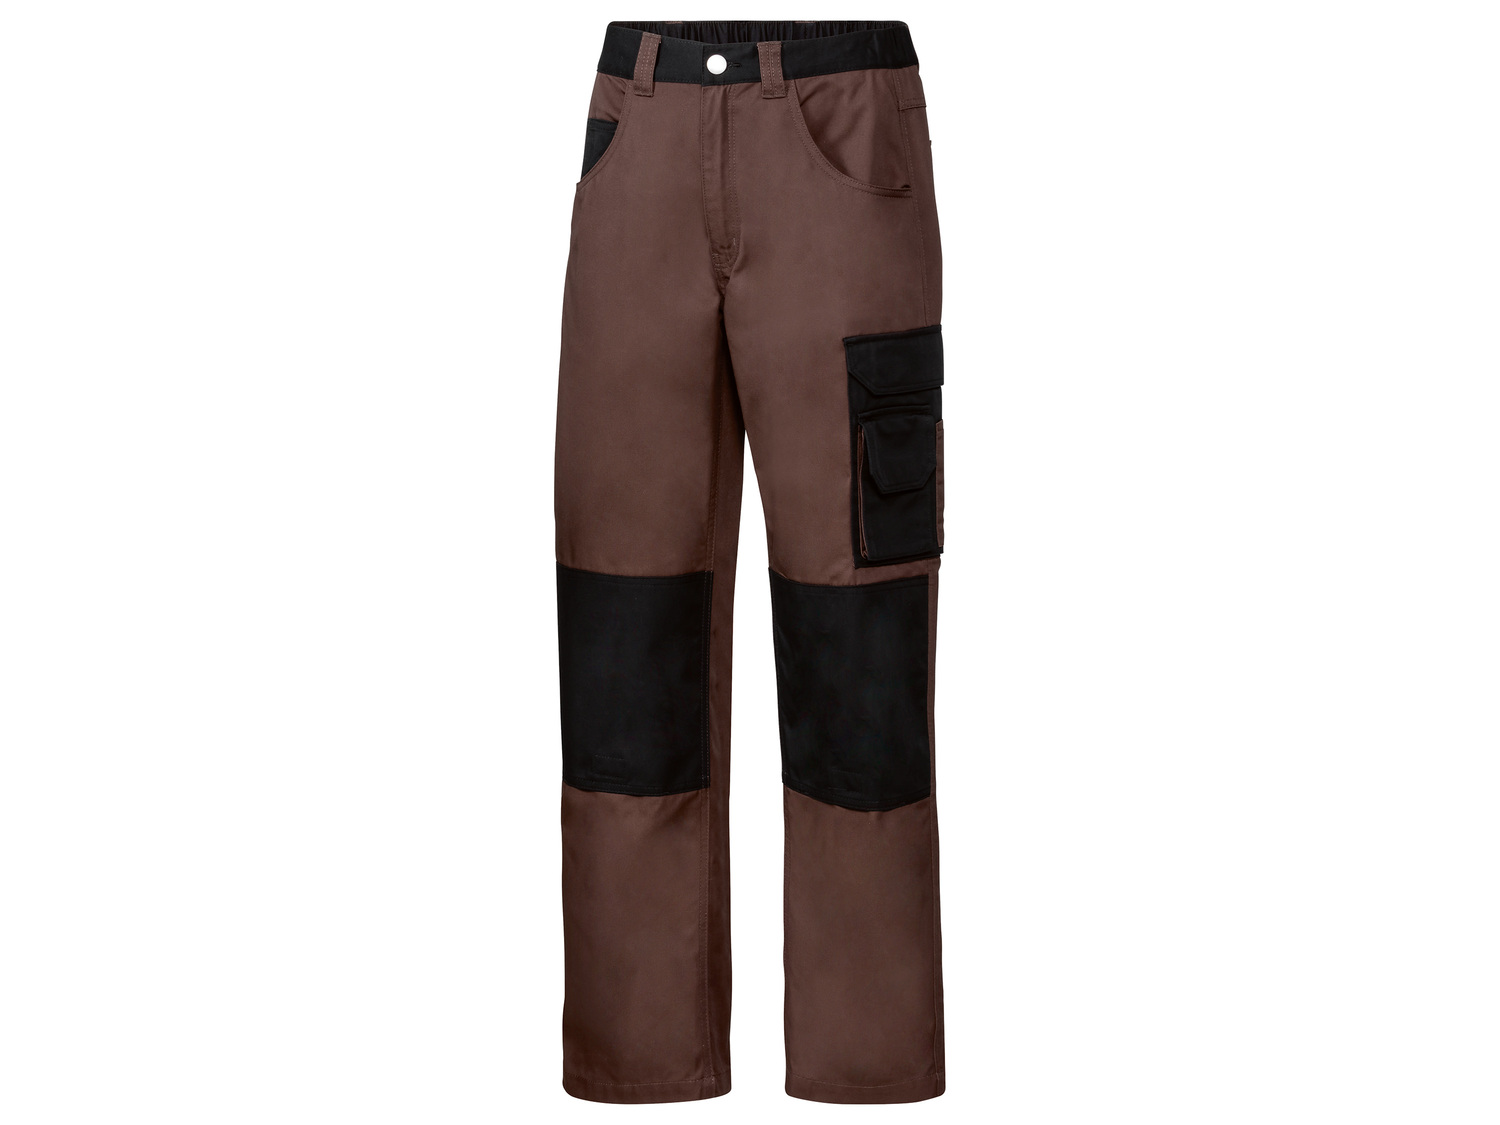 Pantalon de travail homme , le prix 12.99 € 
- Du 38 au 48 selon modèle.
- ...